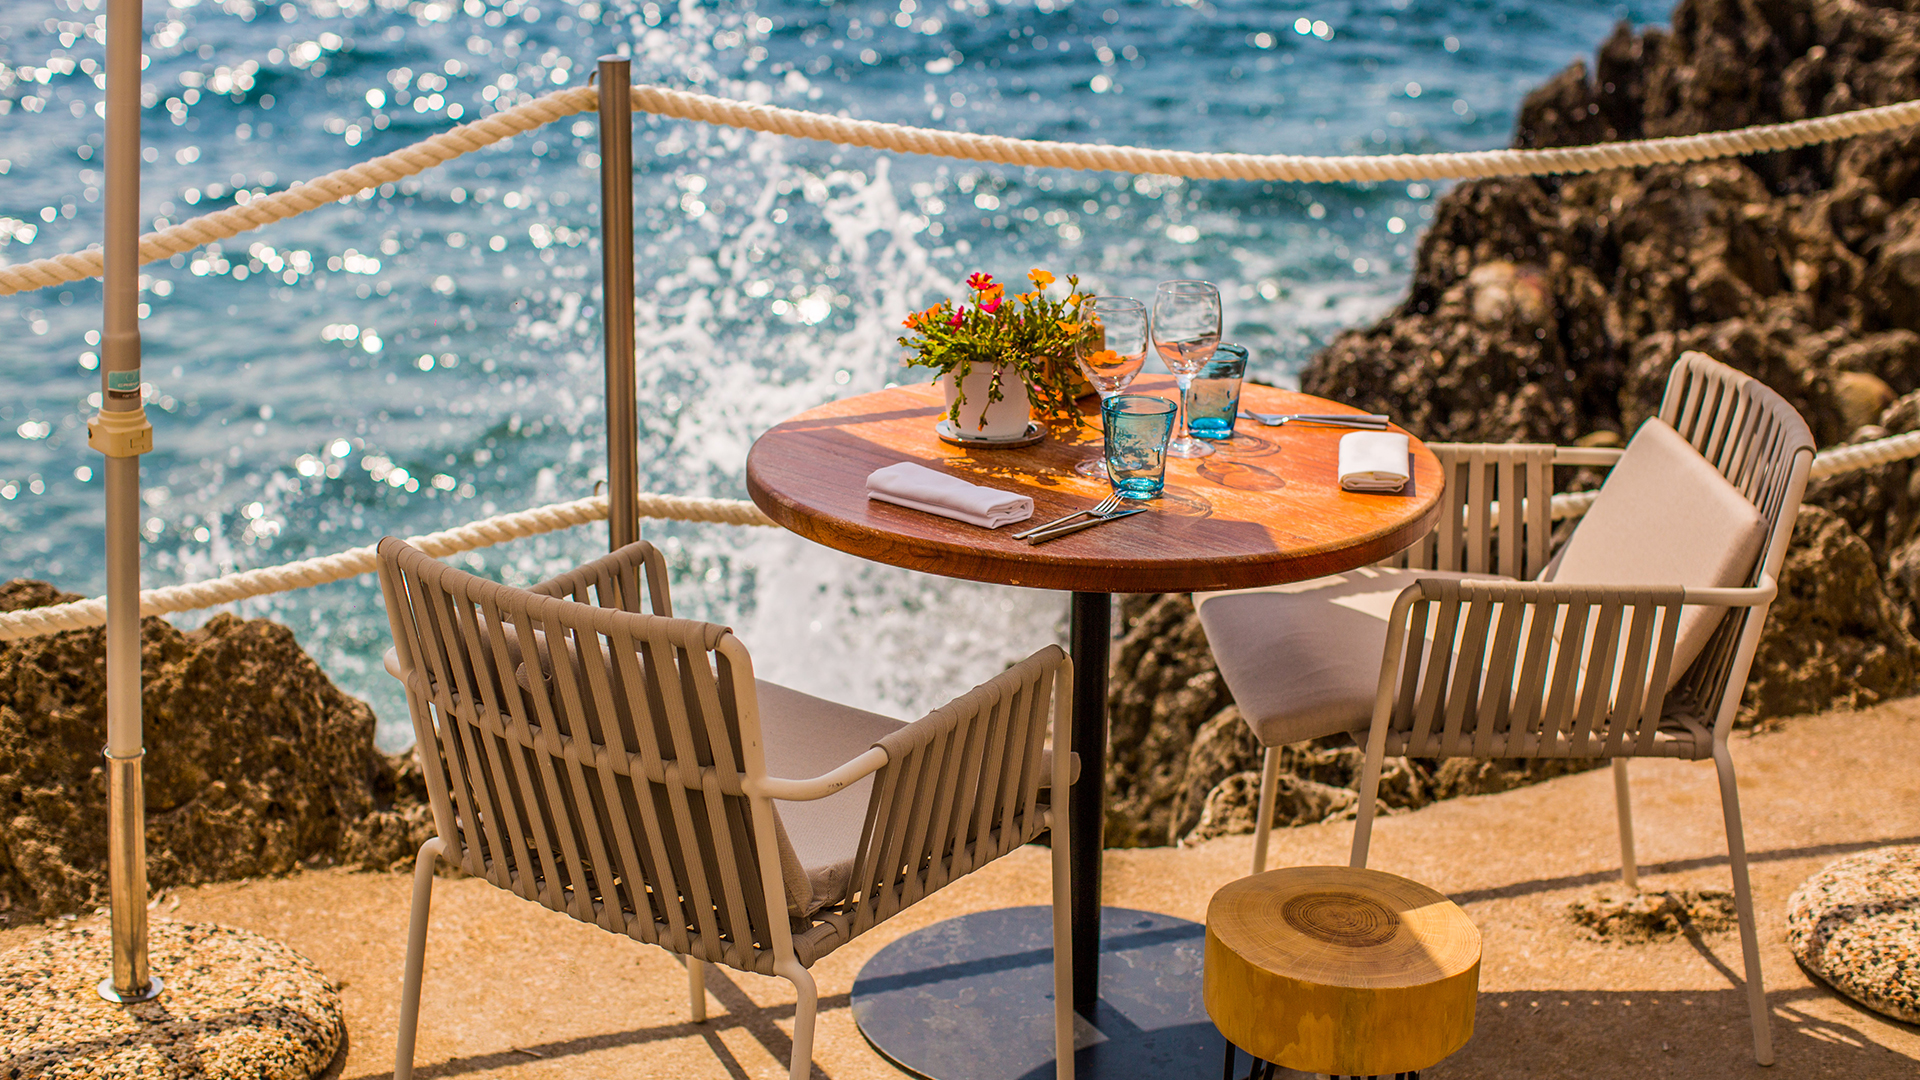 Une table avec des verres et couverts dessus, et deux chaises de part et d'autre. La mer se distingue dans l'arrière-plan.